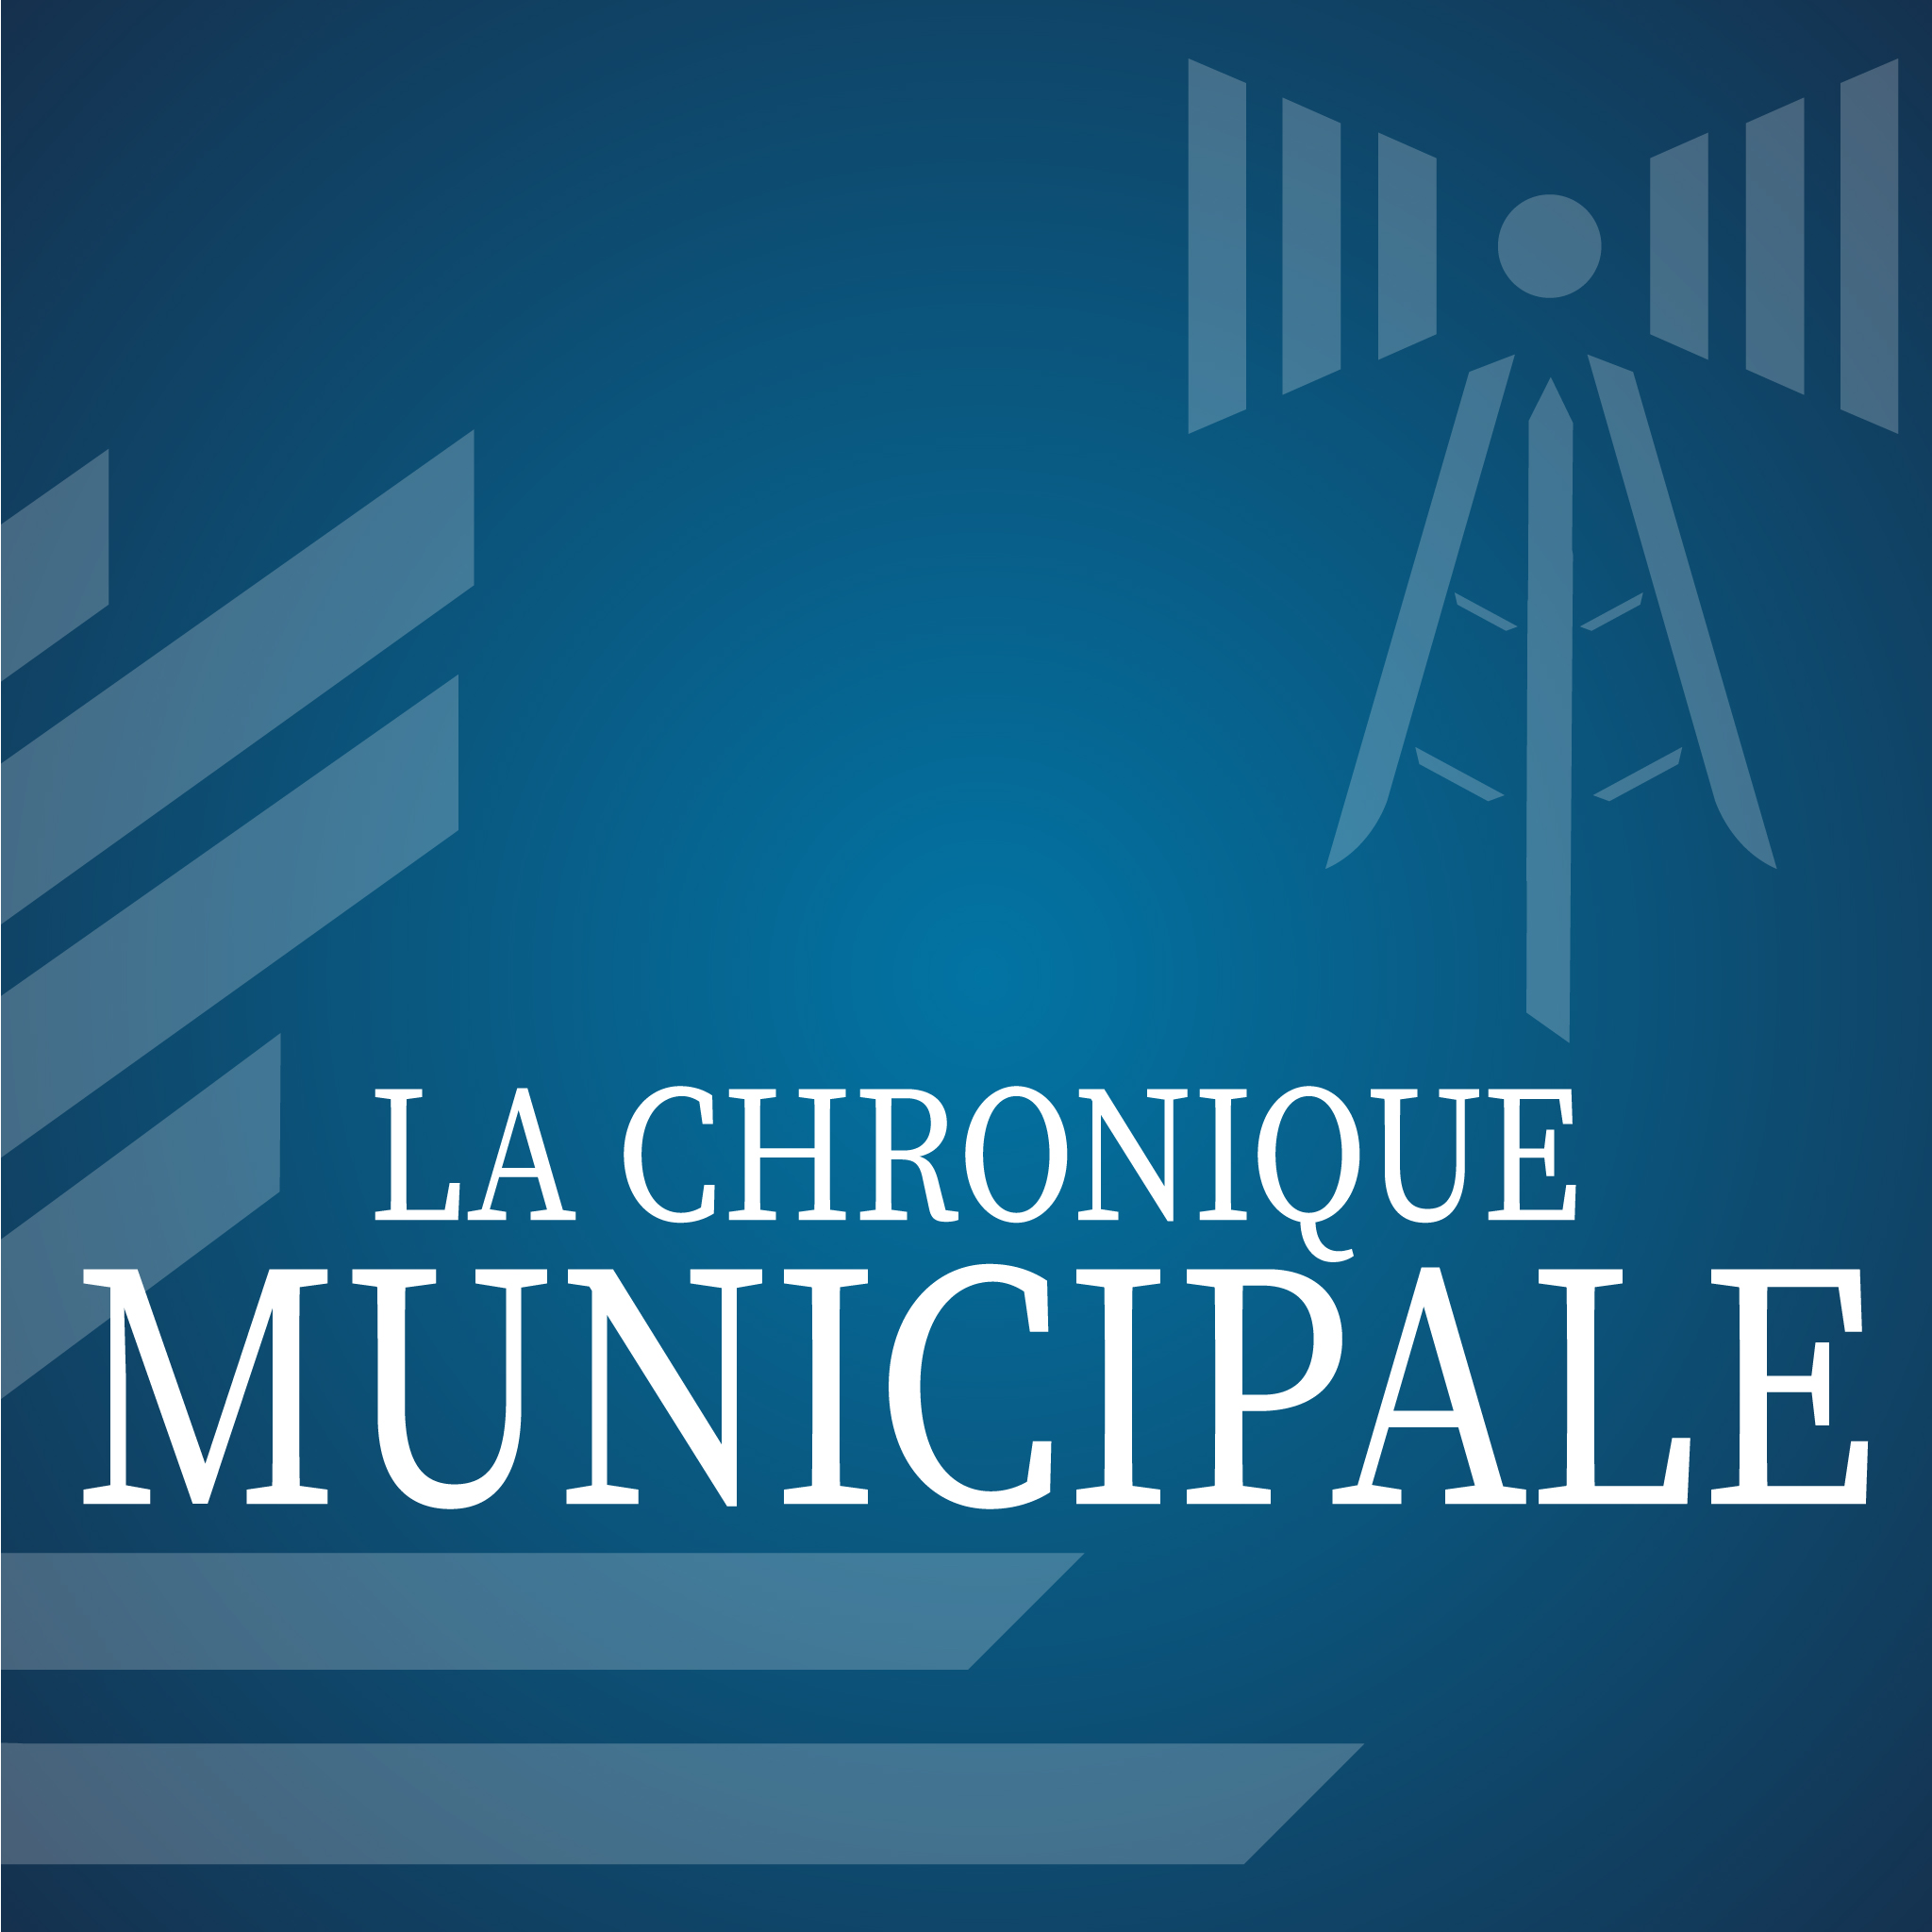 Les chroniques municipale de la Ville de Baie-Comeau